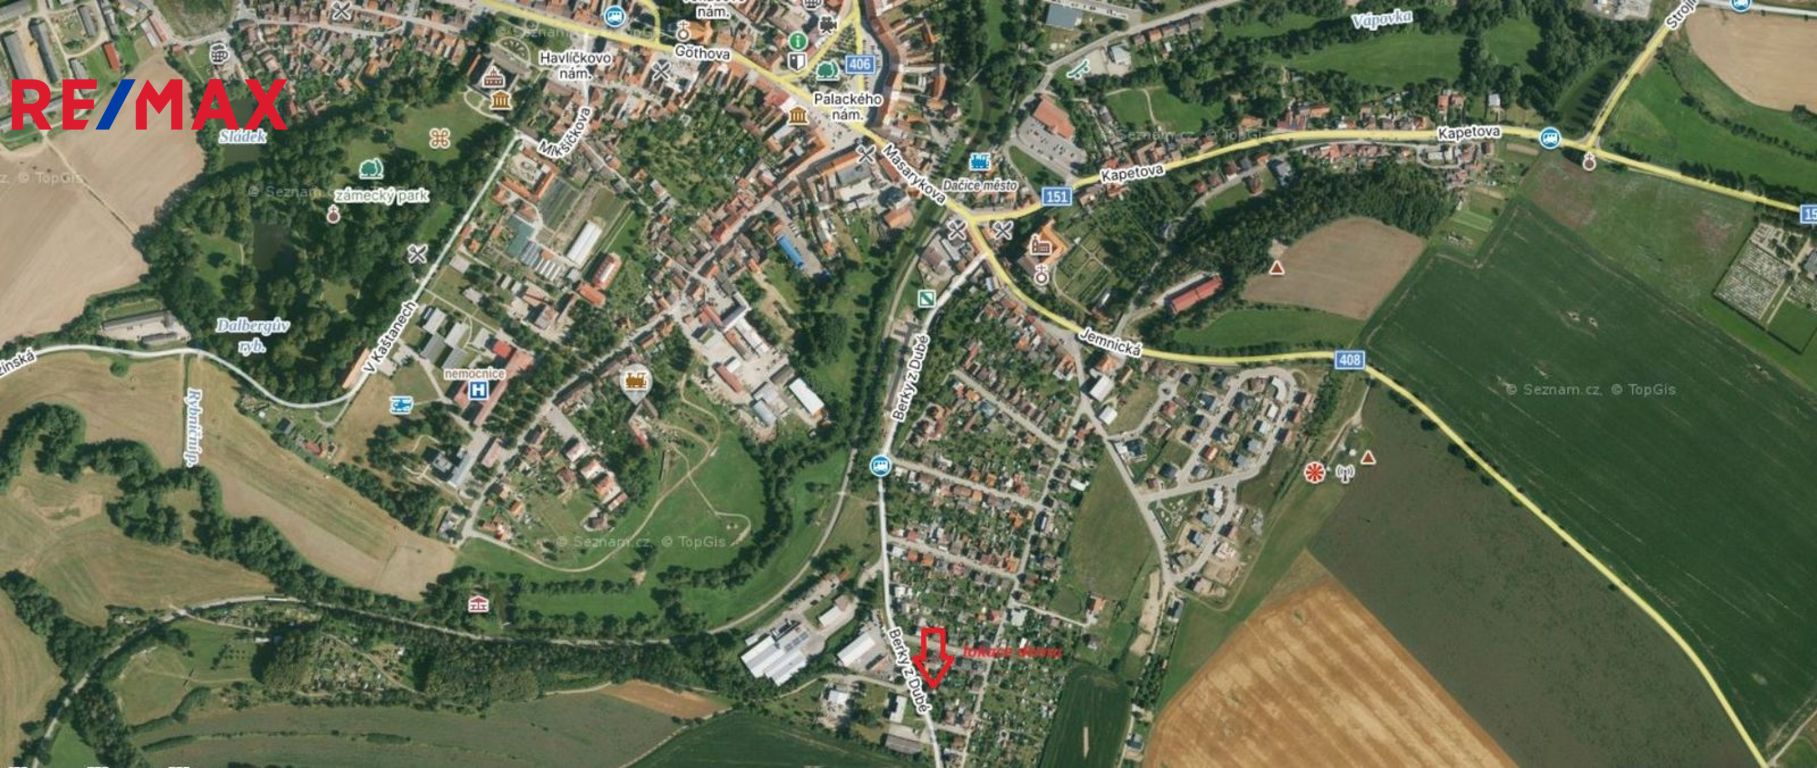 lokace domu ve městě Dačice